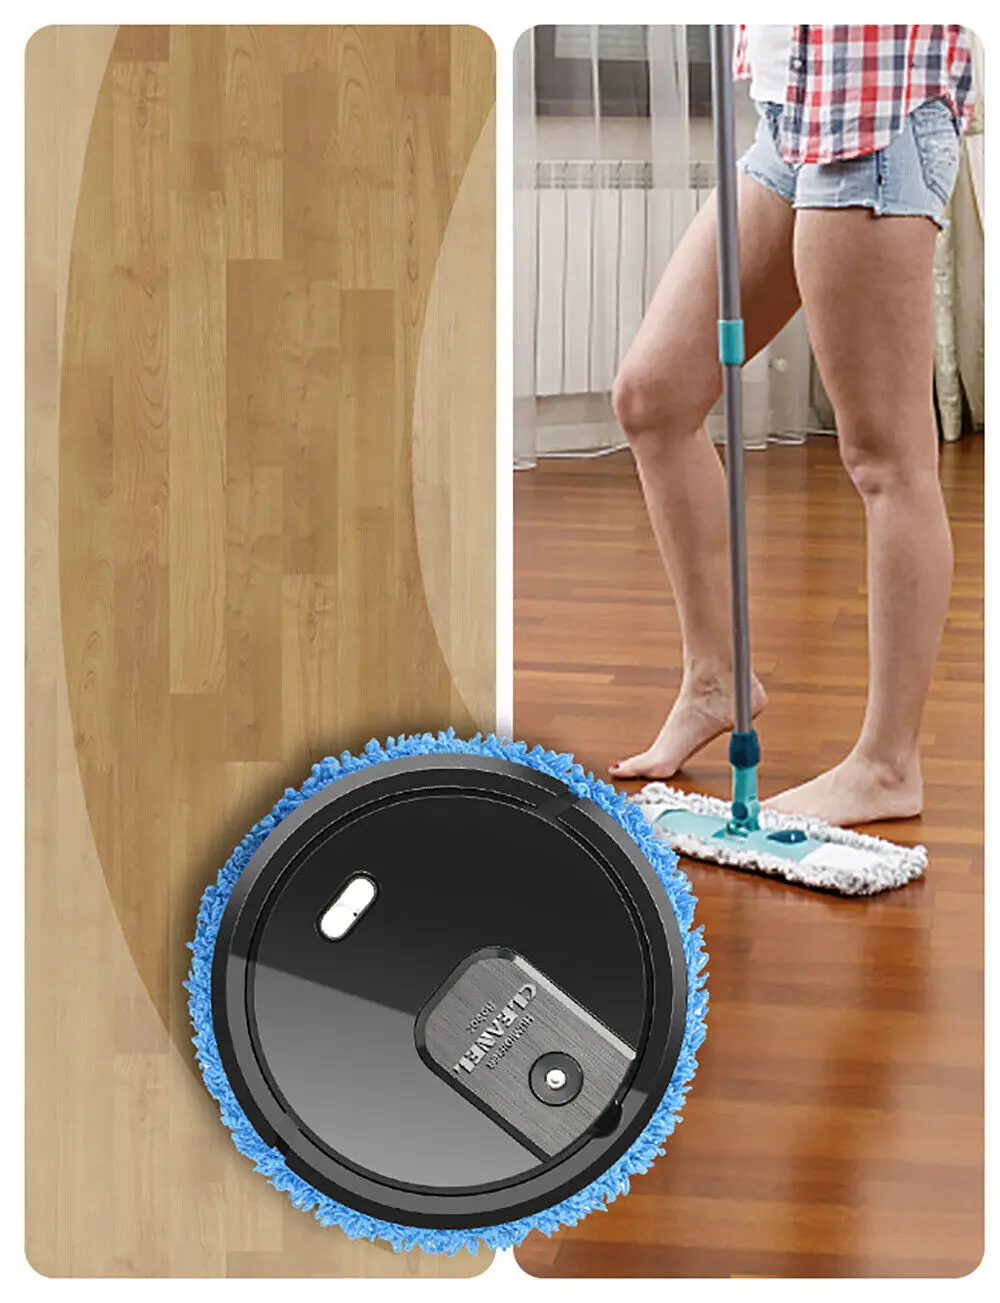 Робот-Подметальщик 3 в 1 Для Сухой и Влажной Автоматической Уборки Домашнего Пола Smart Mop